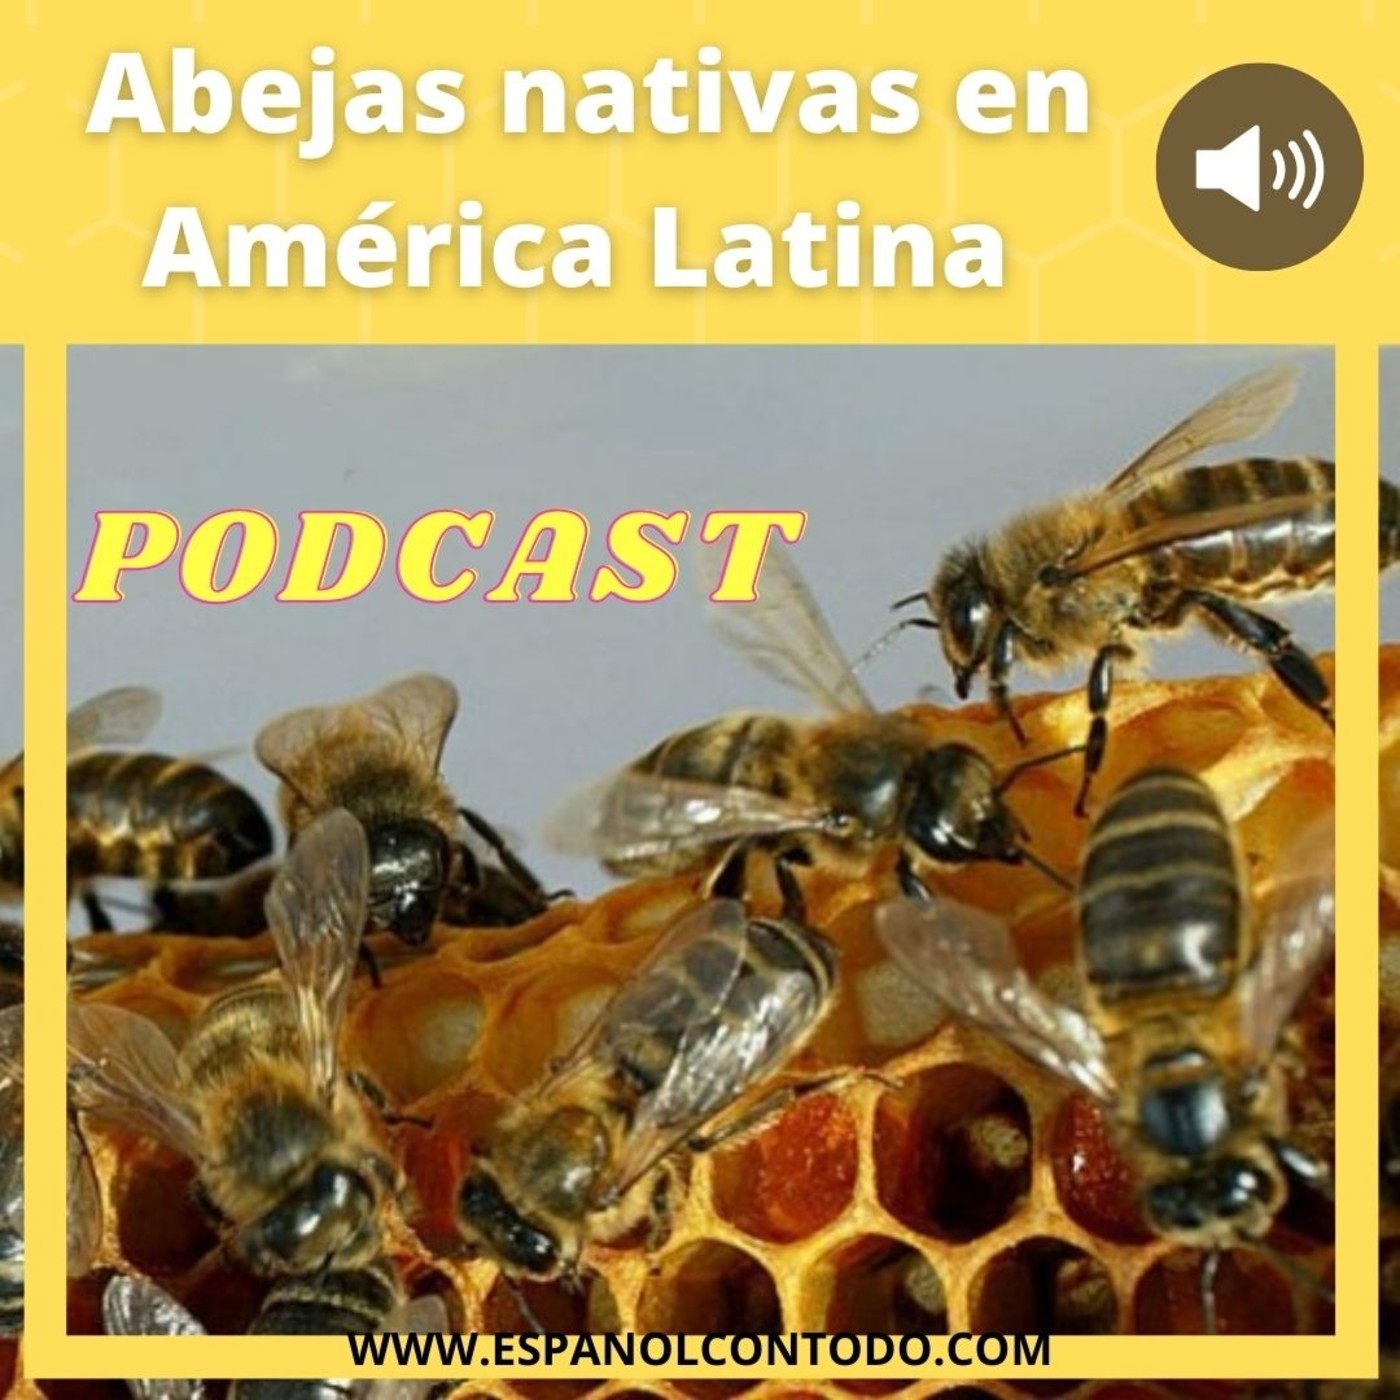 037 - Abejas nativas en América Latina